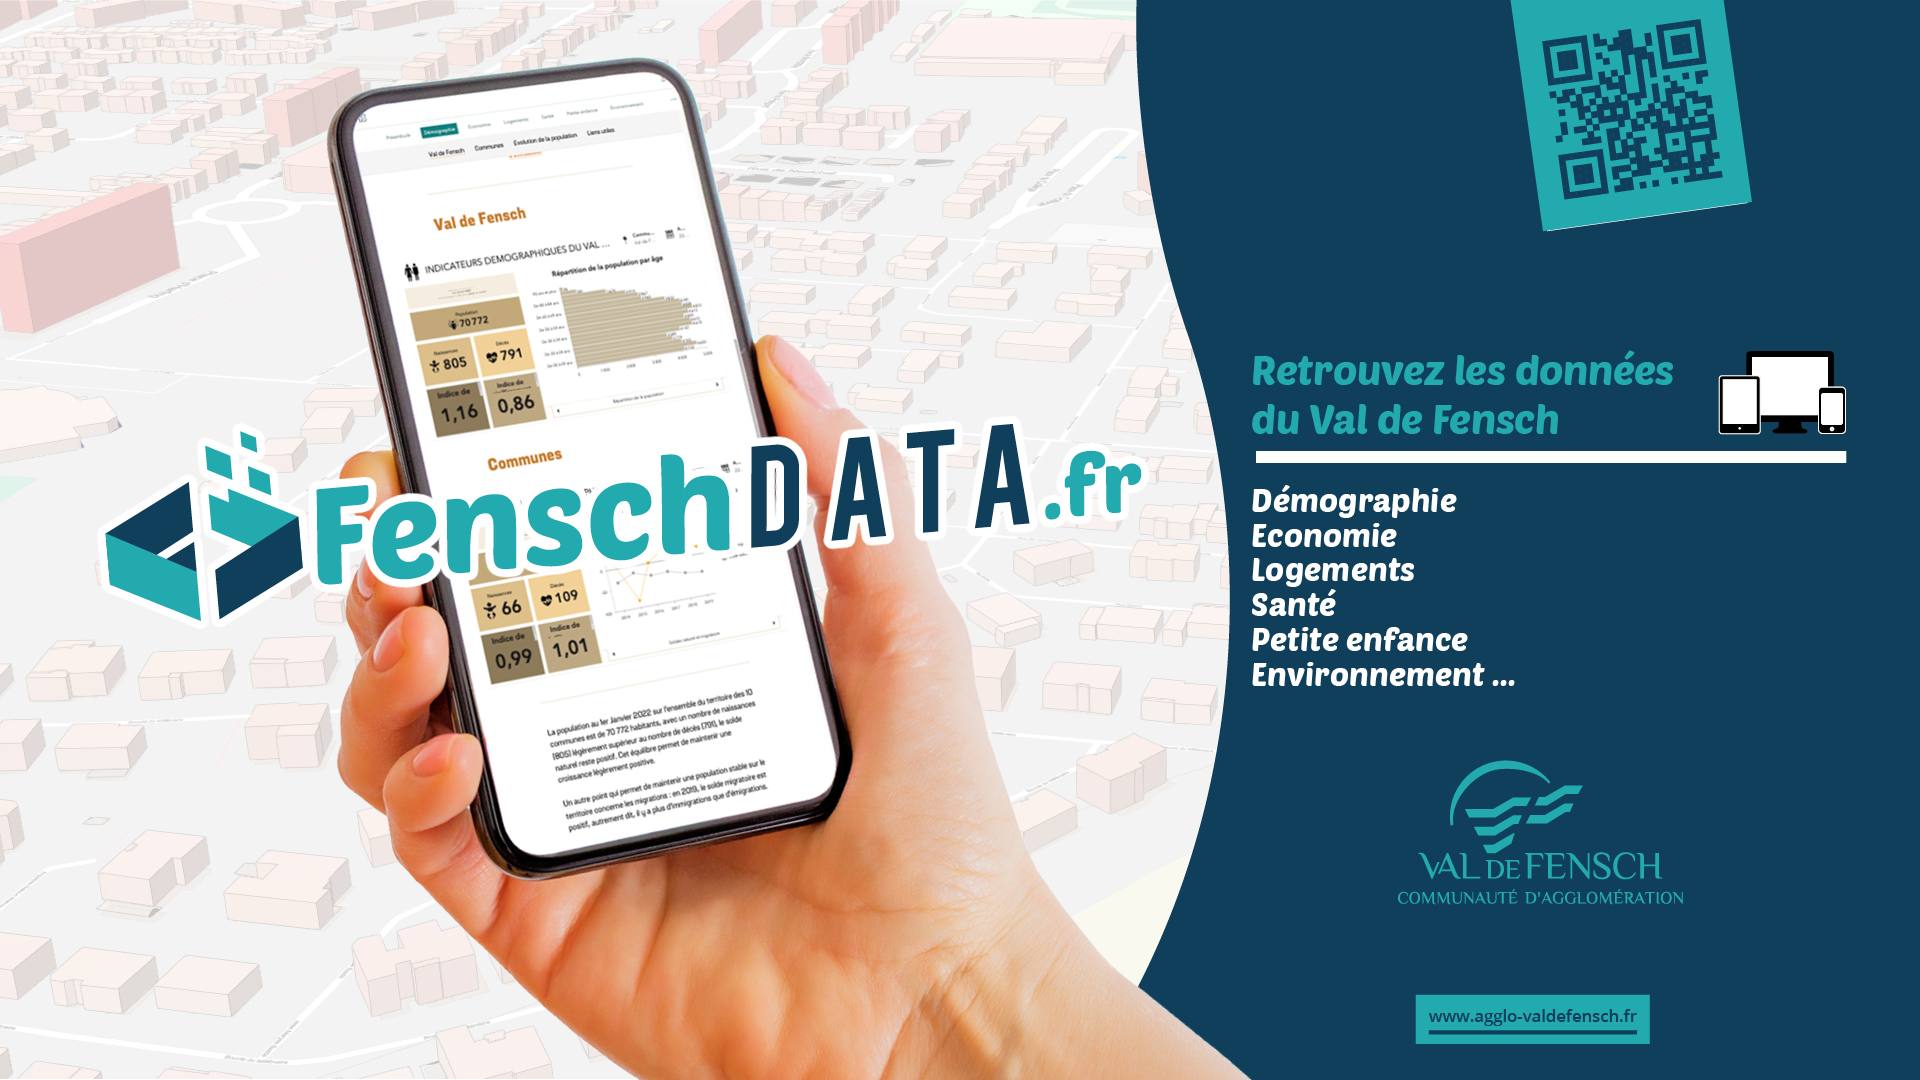 Fensch Data : de nouvelles données sont disponibles